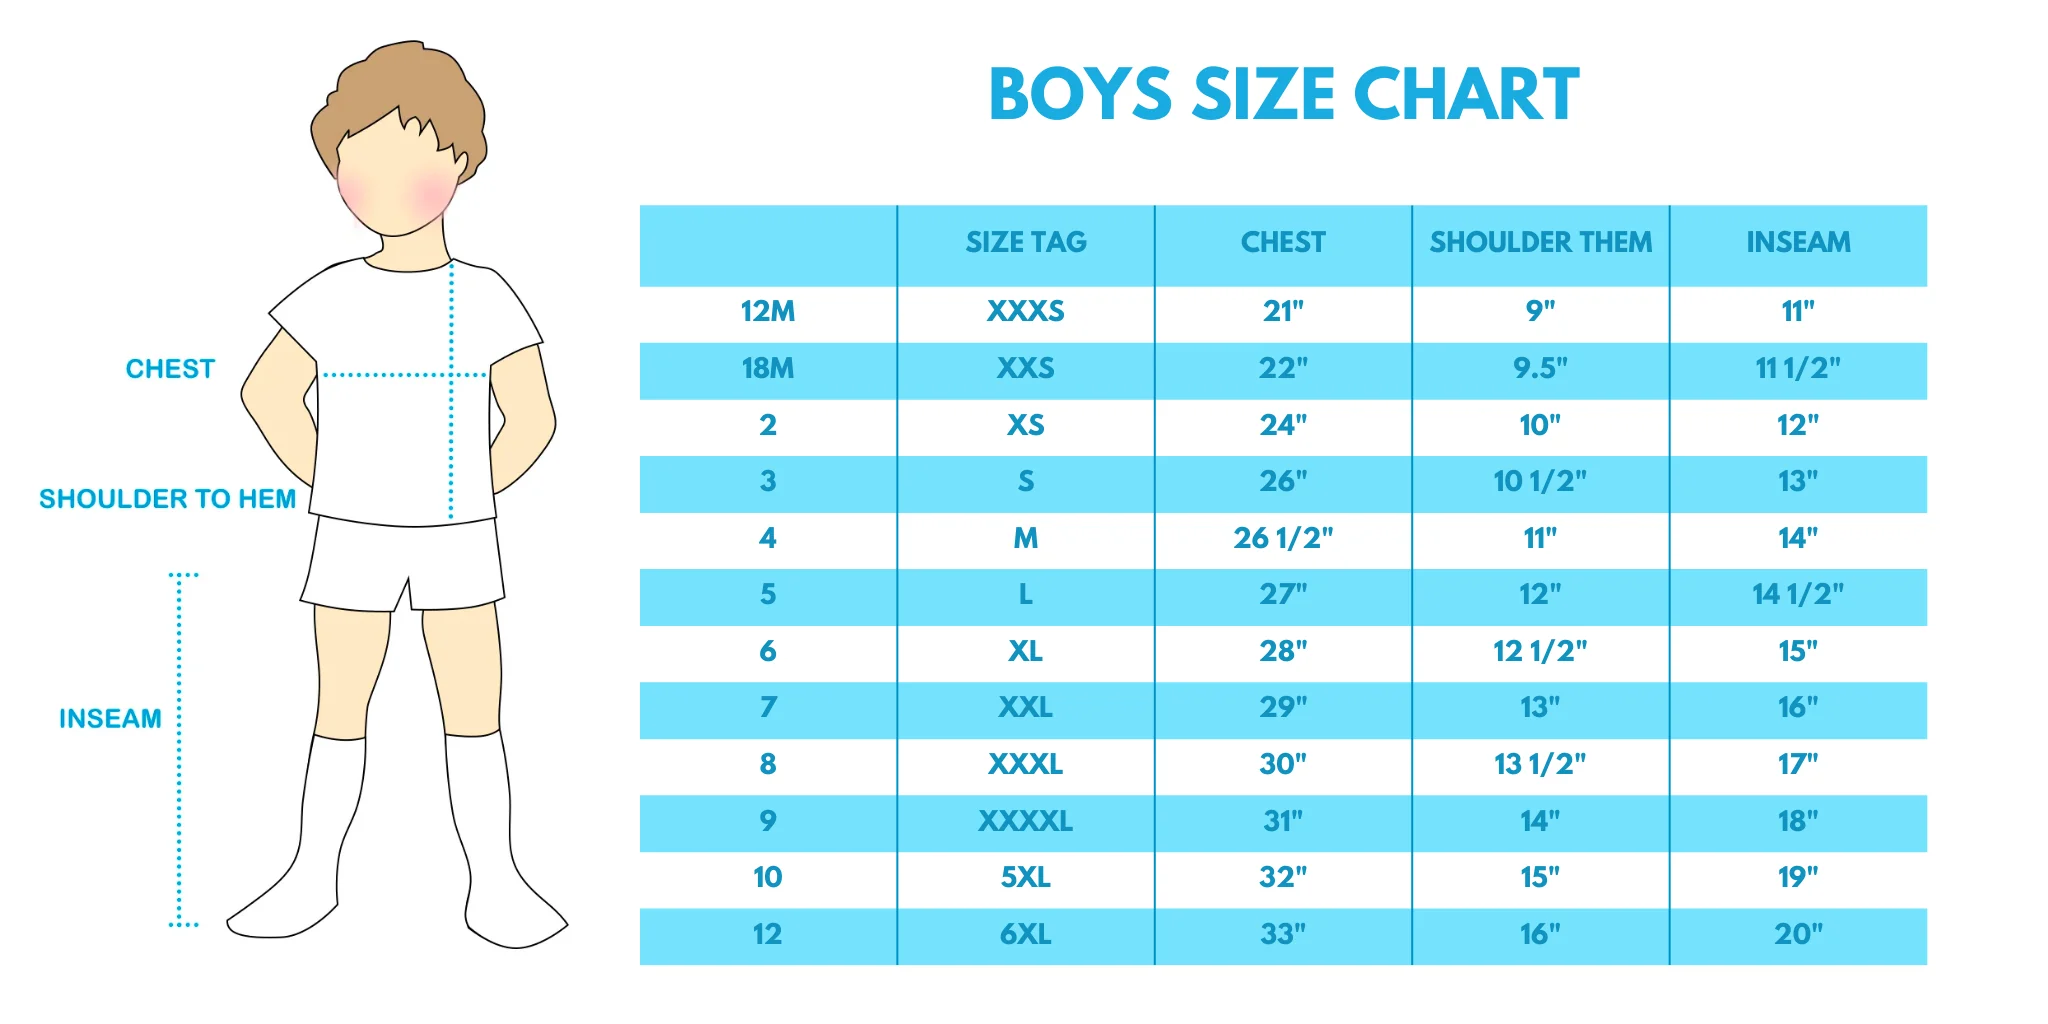 Boys size chart